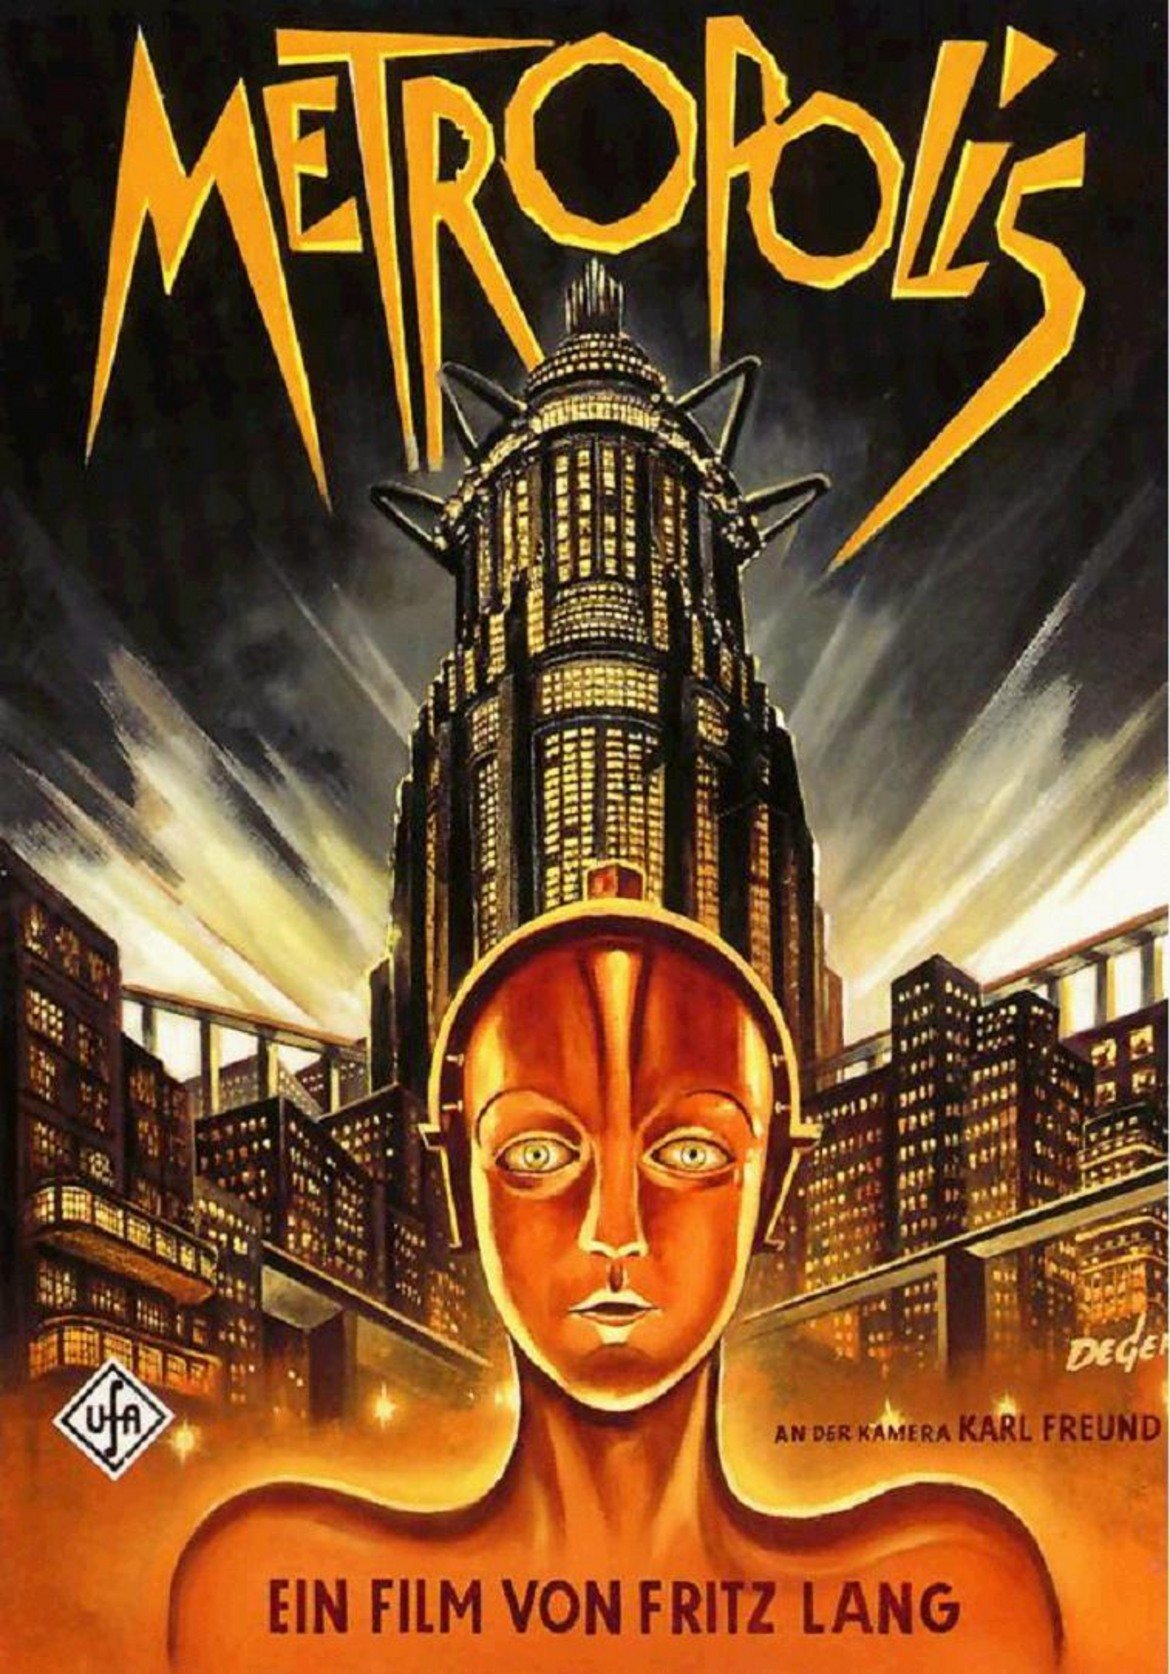  Metropolis / "Метрополис"

Дядото на всички филми от този жанр. Този филм от 1927 г. поставя основите на киберпънка в киното. Футуристичният град Метрополис е дом за едно утопично общество, в което богаташите живеят спокойно и щастливо. Под него обаче функционира още един цял град на бедност и машинария, който поддържа цялата утопия действаща. 
